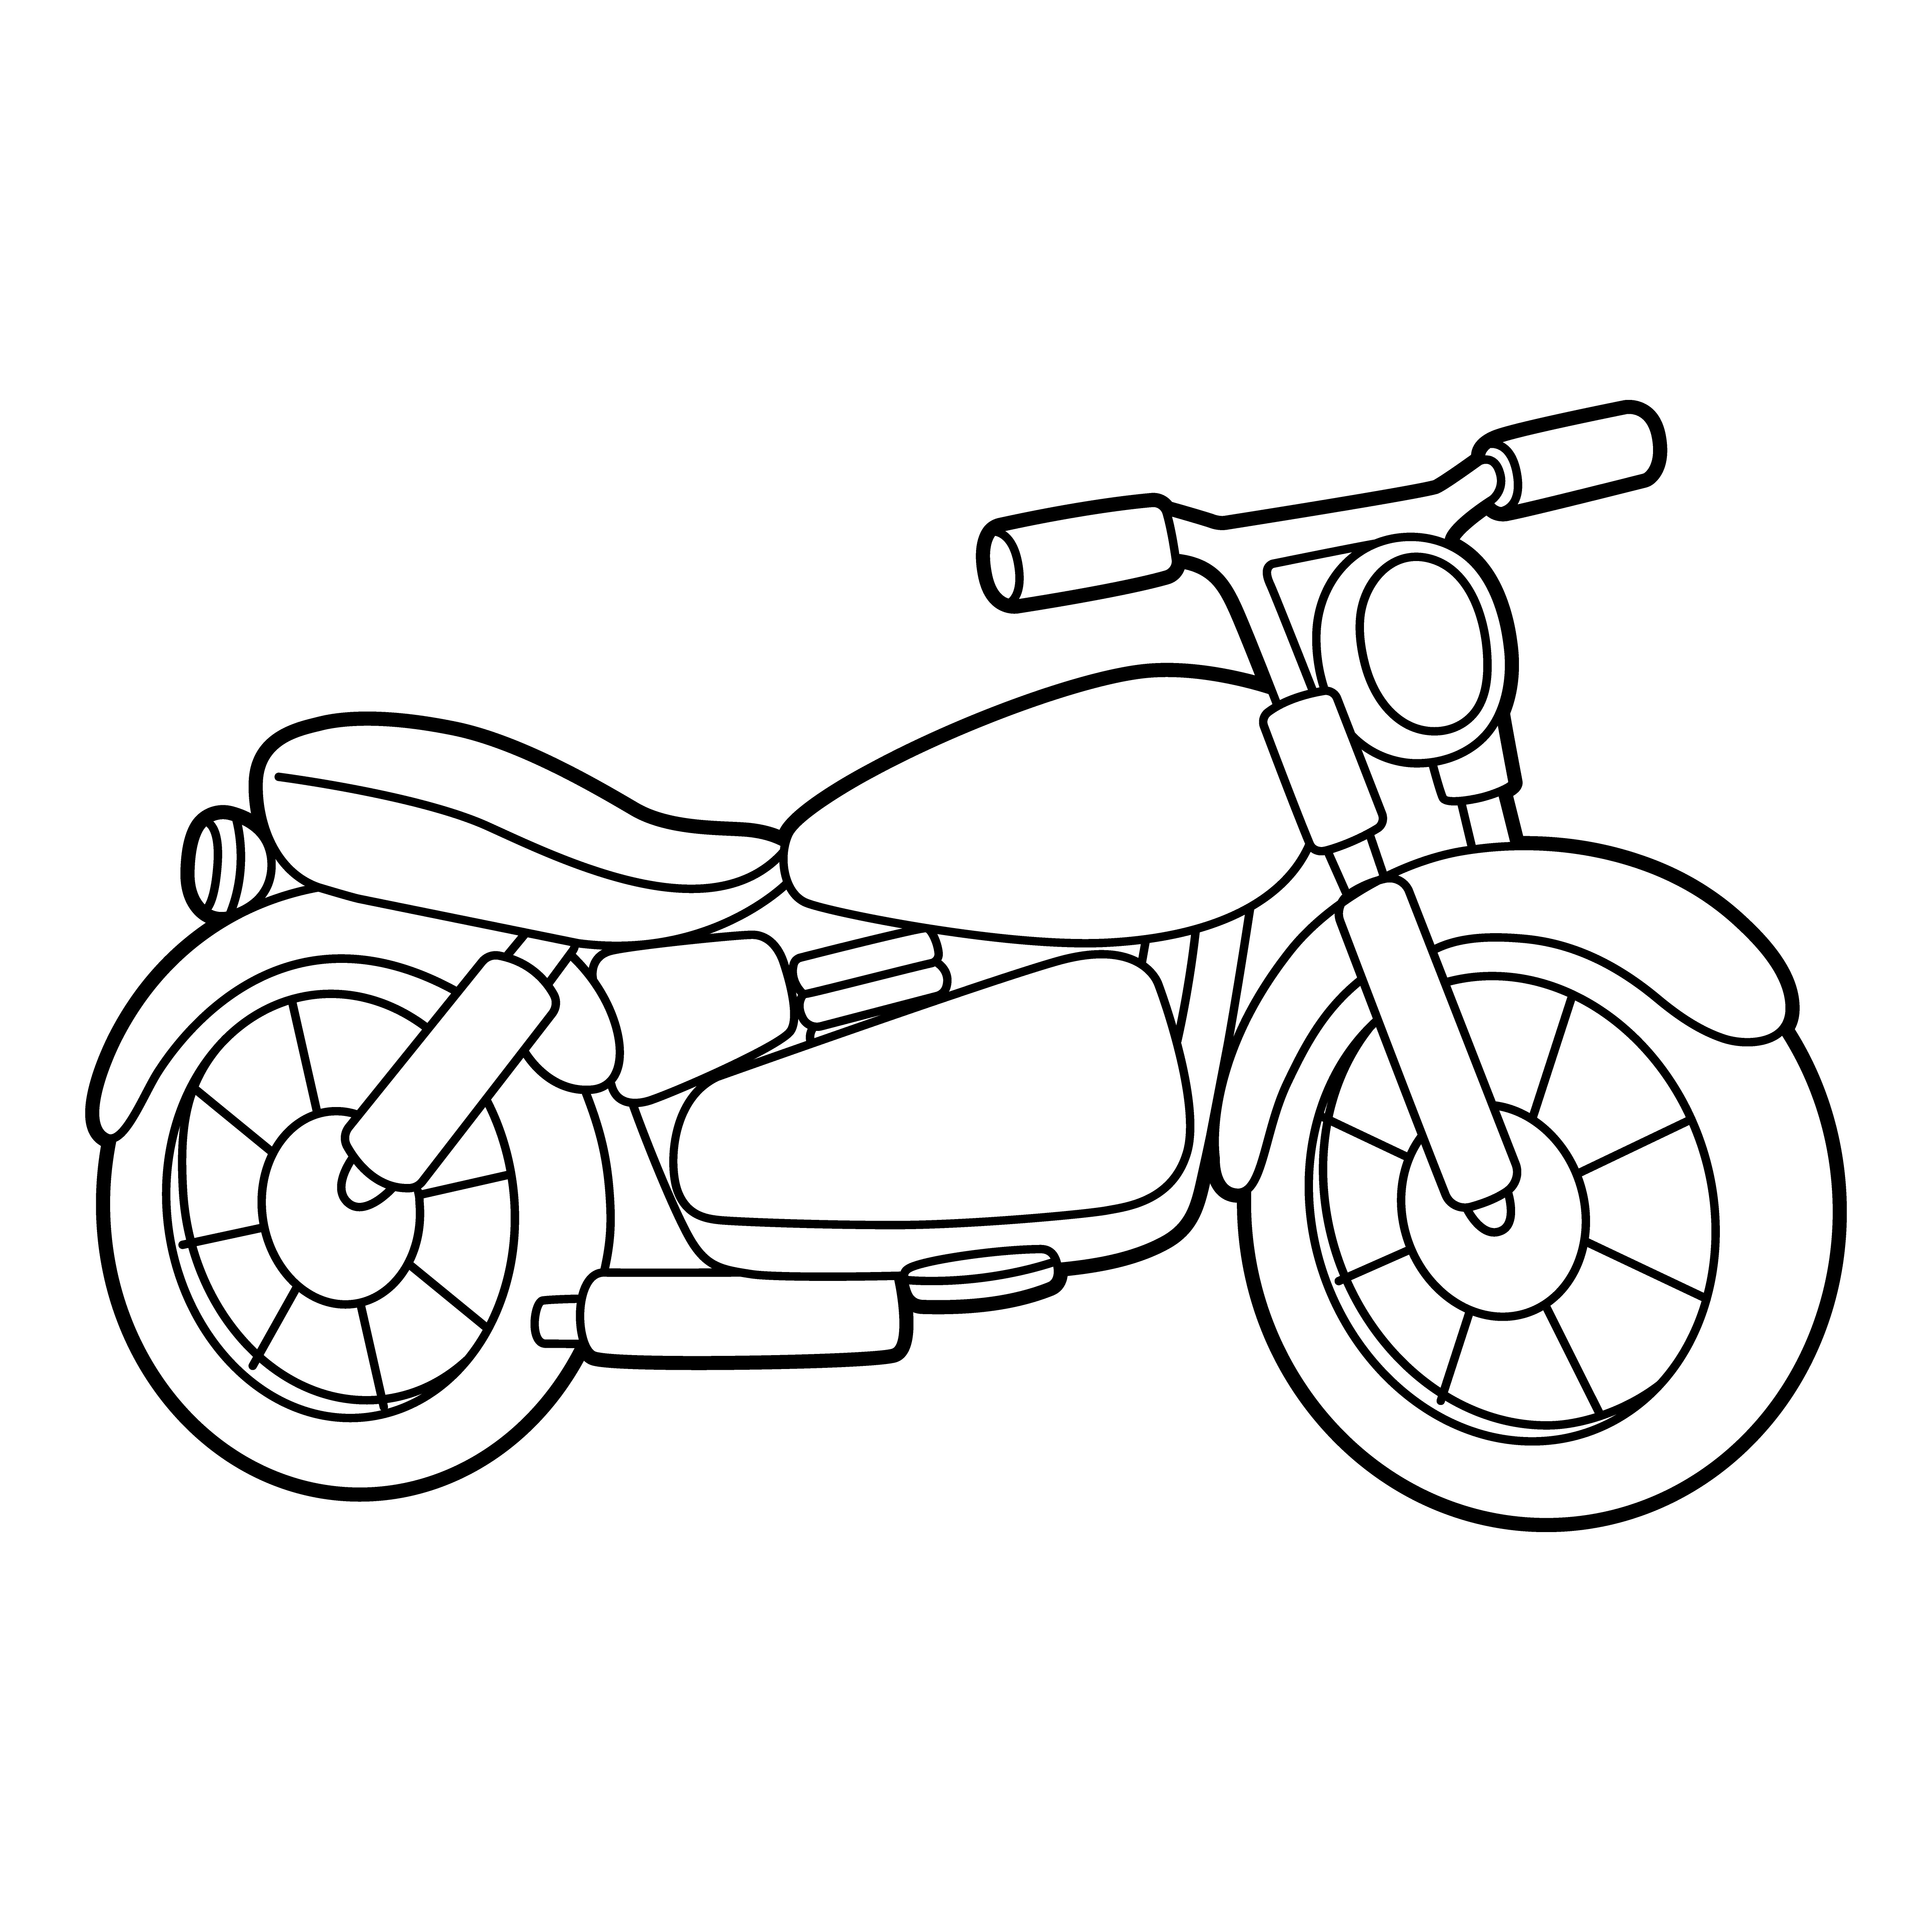 Раскраска мотоцикл «Мото-горизонты» формата А4 в высоком качестве